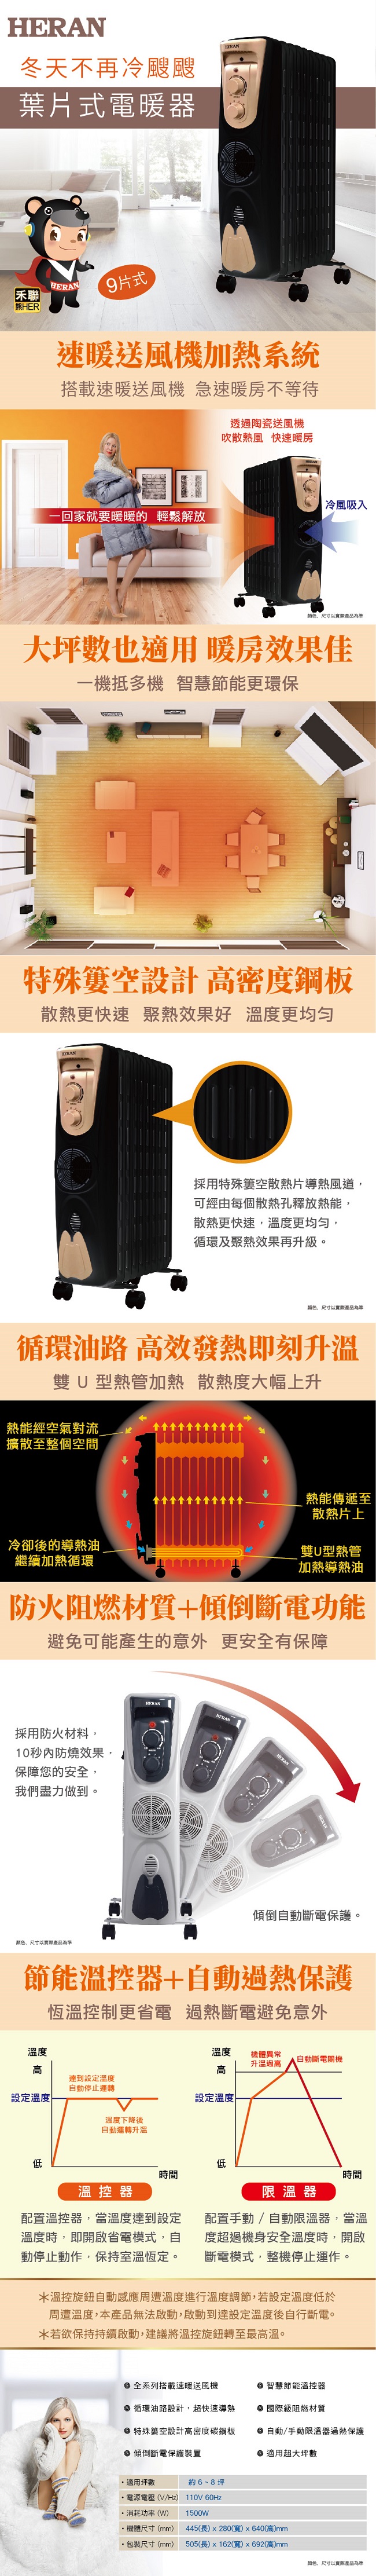 HERAN禾聯 尊爵版9葉片式速暖電暖器 HOH-159M1B